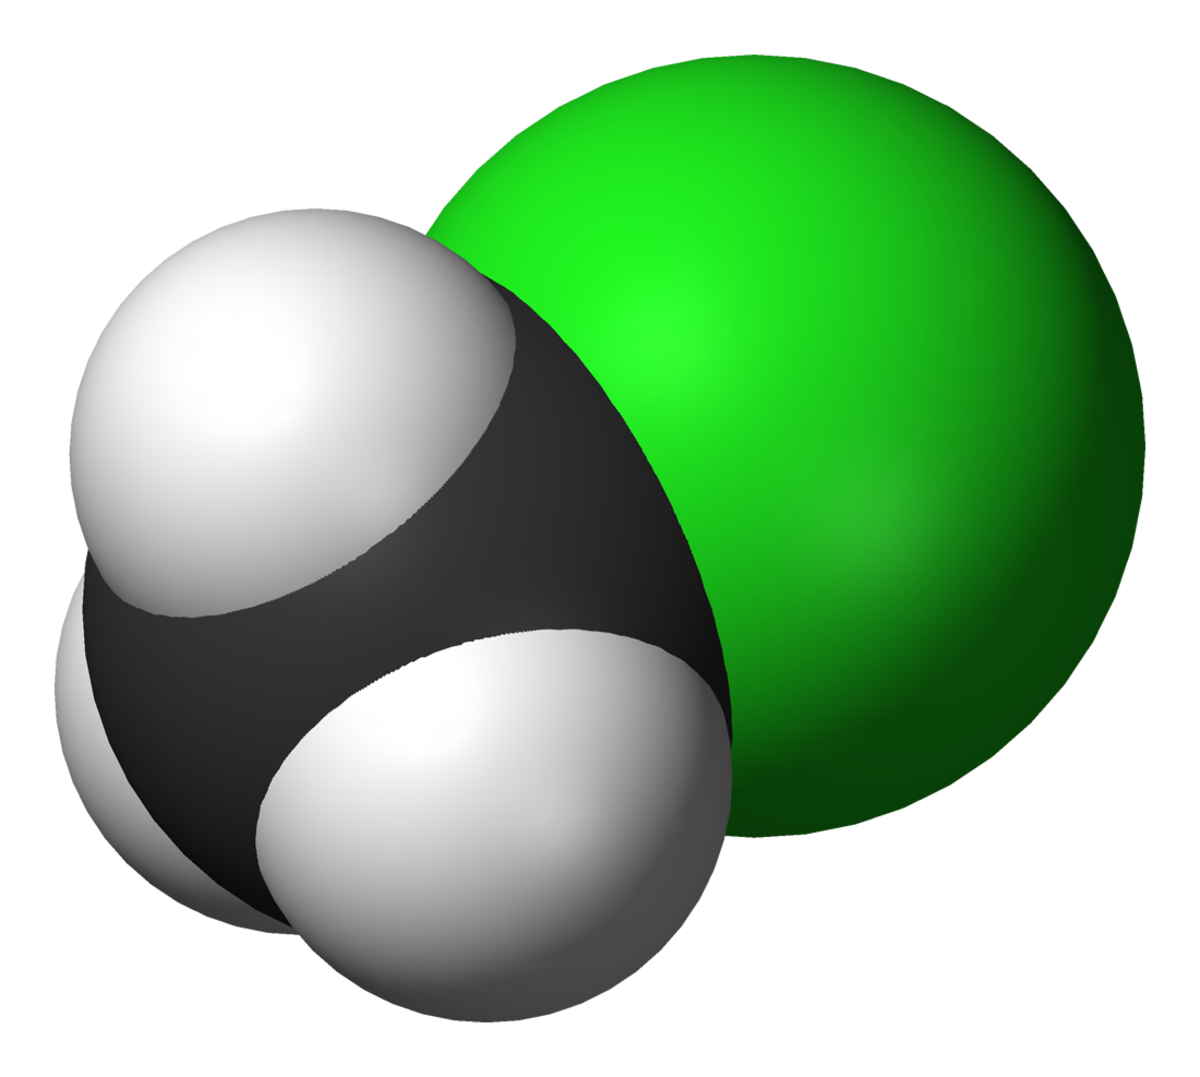 Chlorométhane